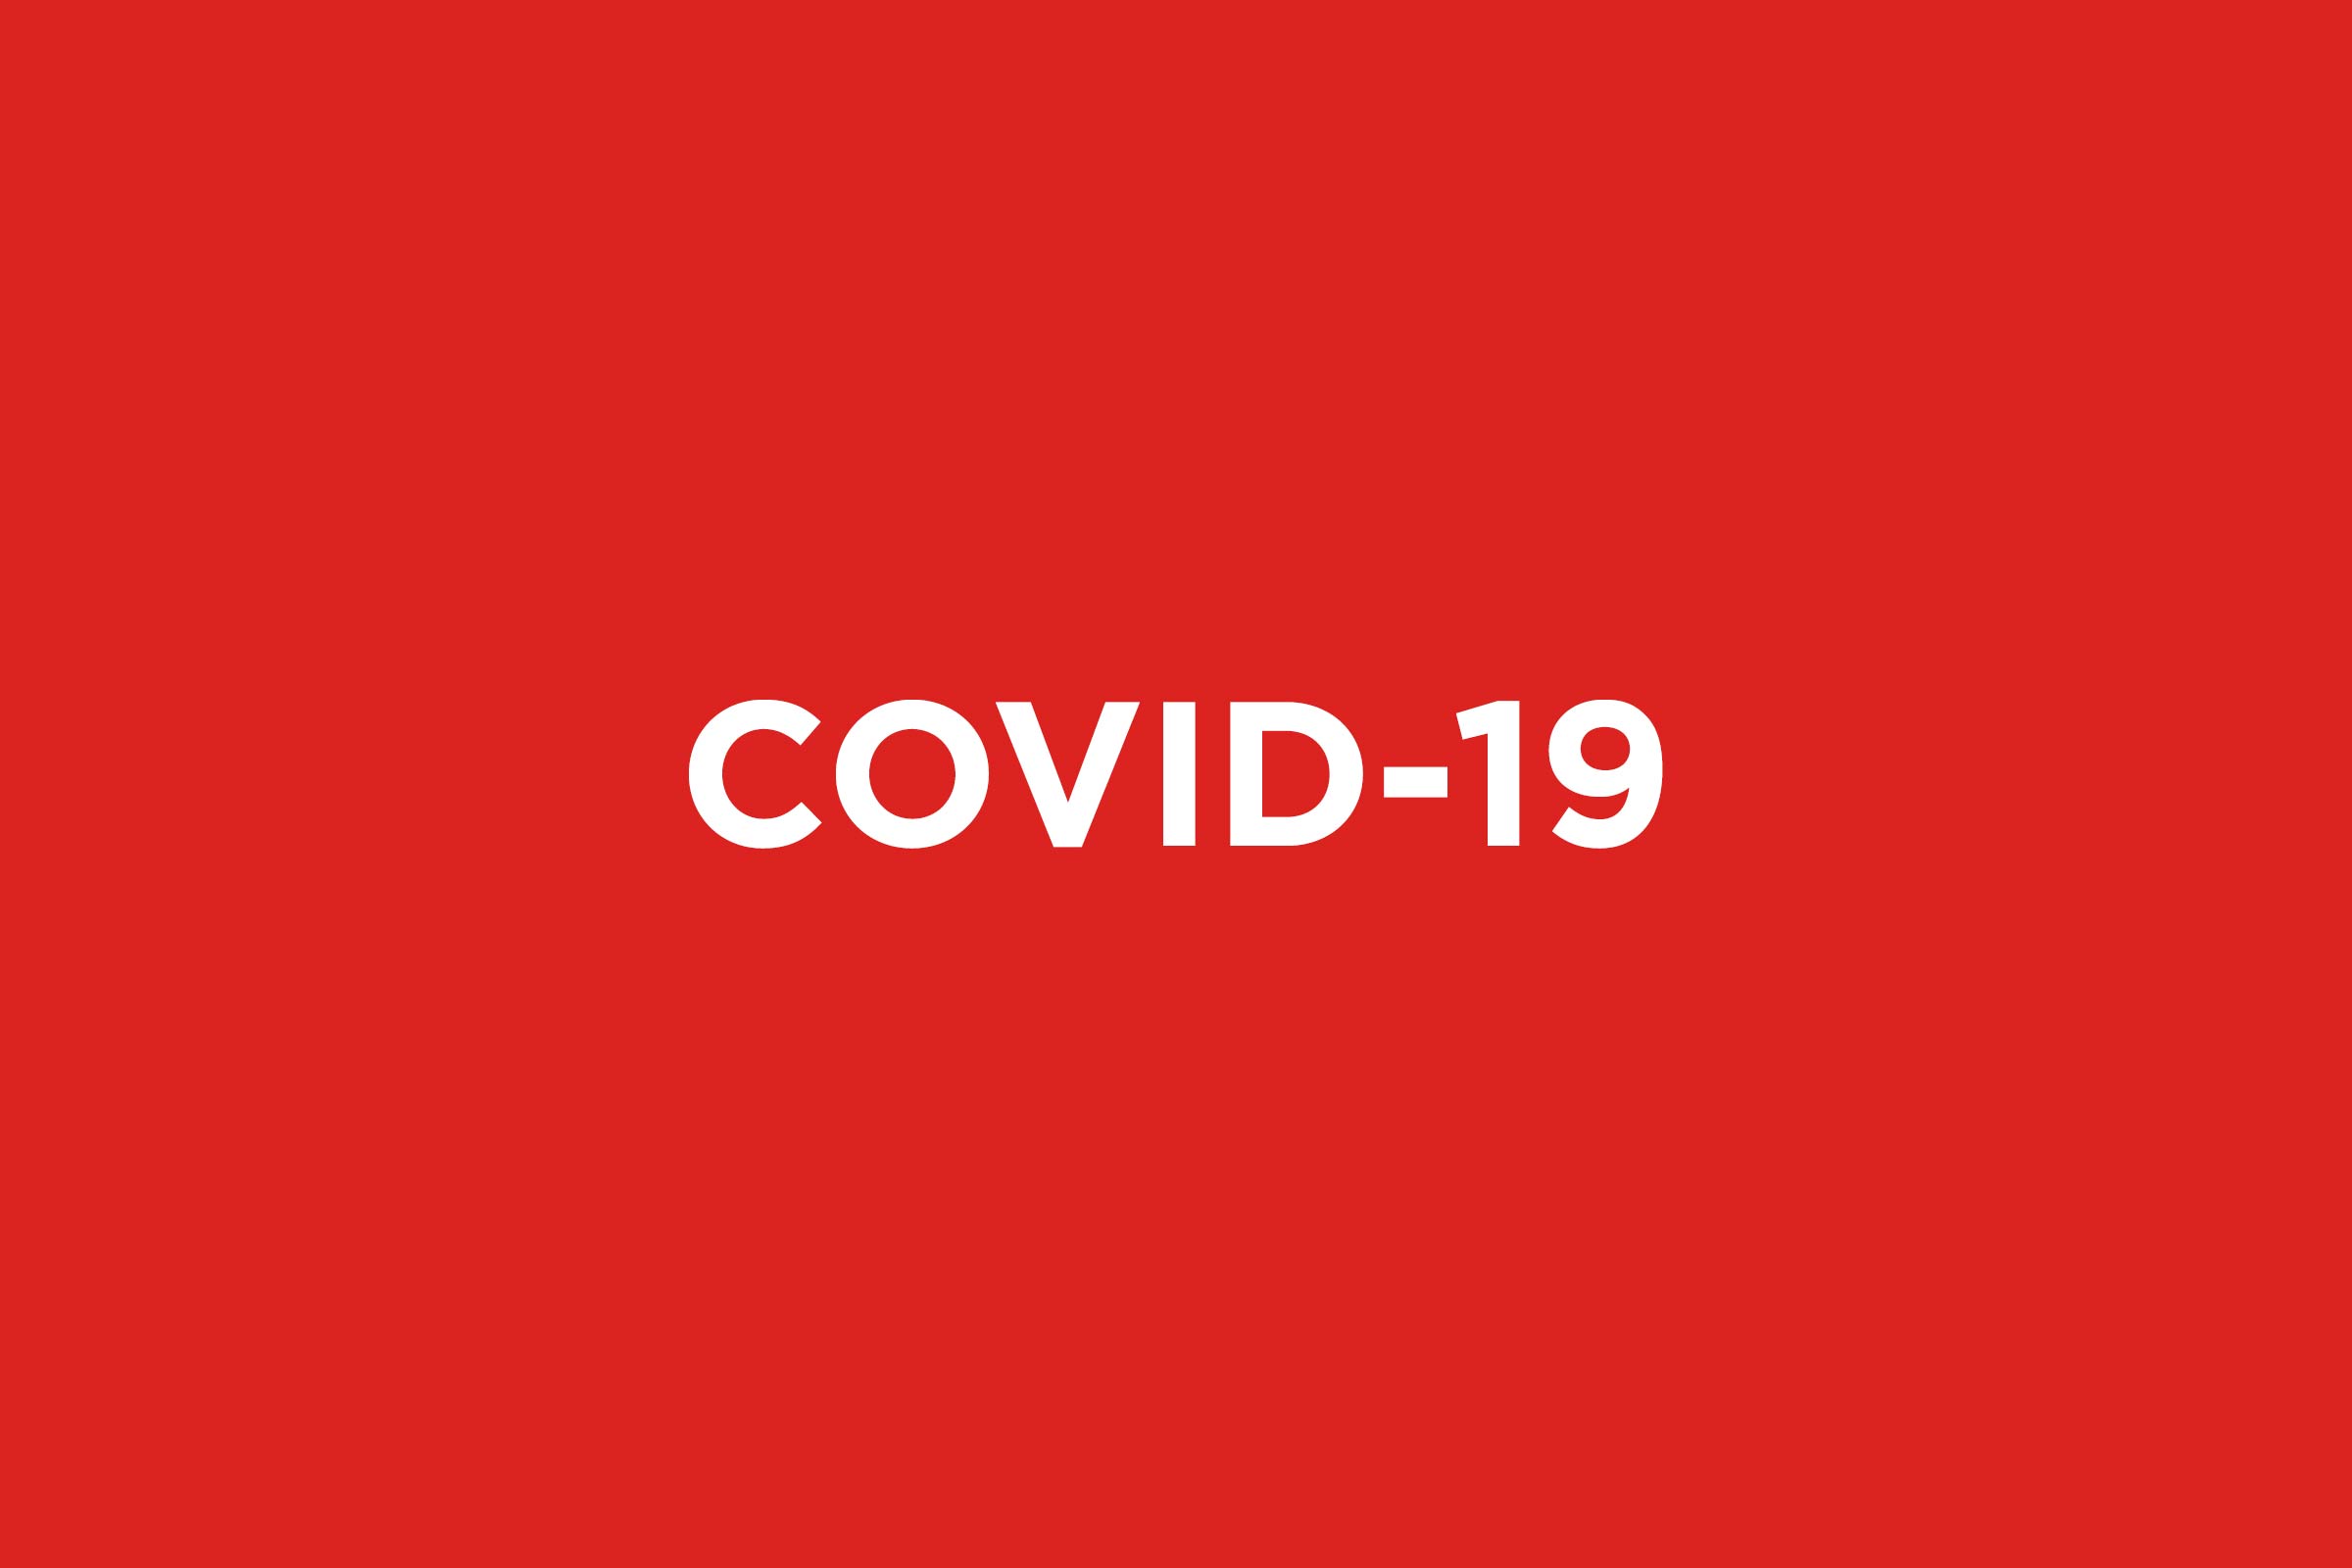 Notre réponse à la COVID-19